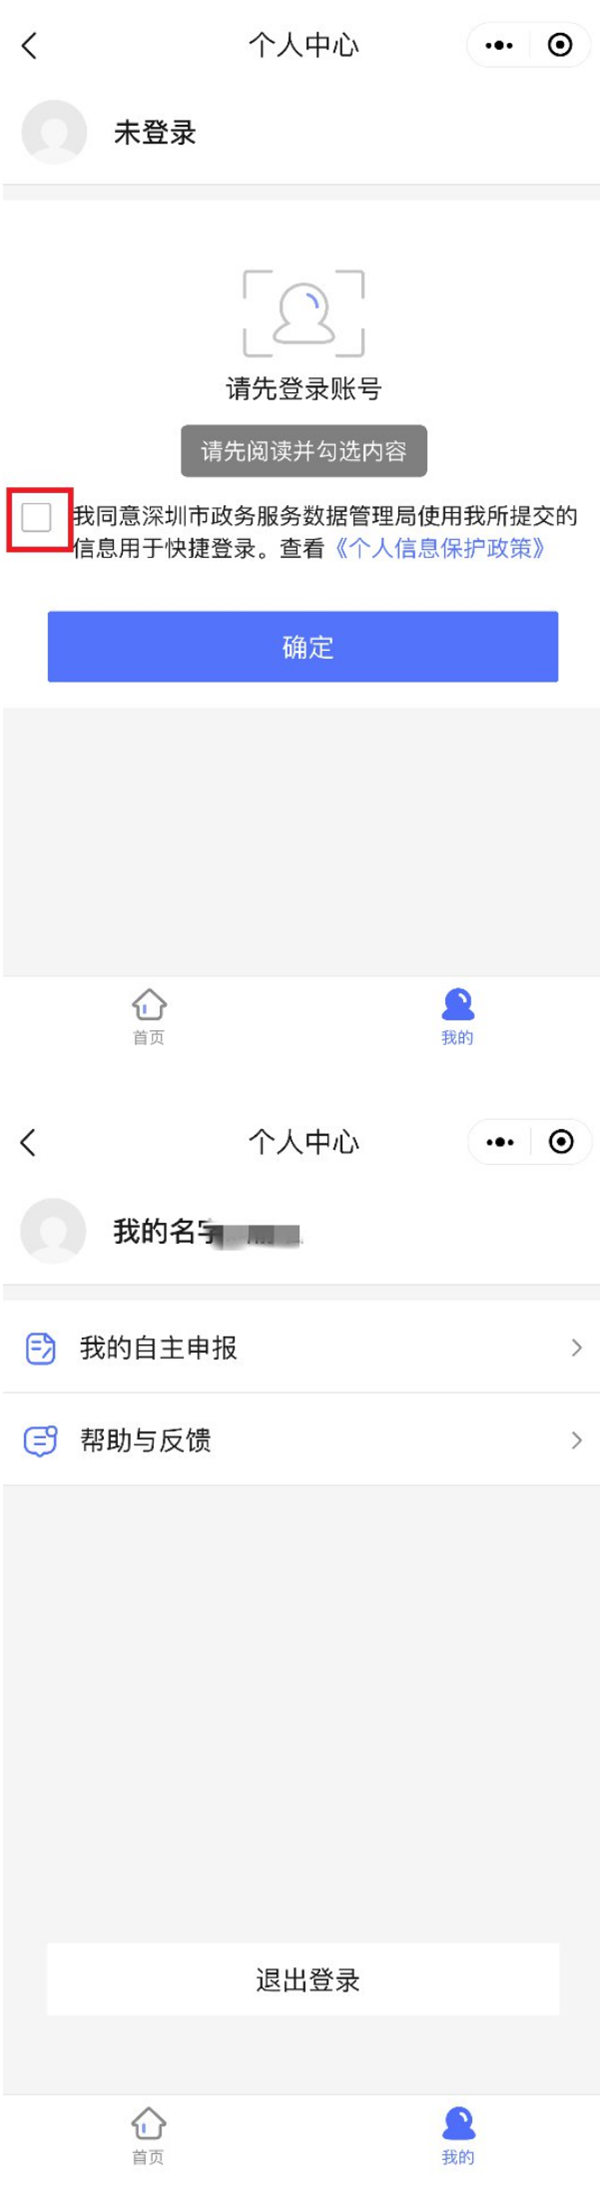 深圳高三师生返校健康信息申报指引